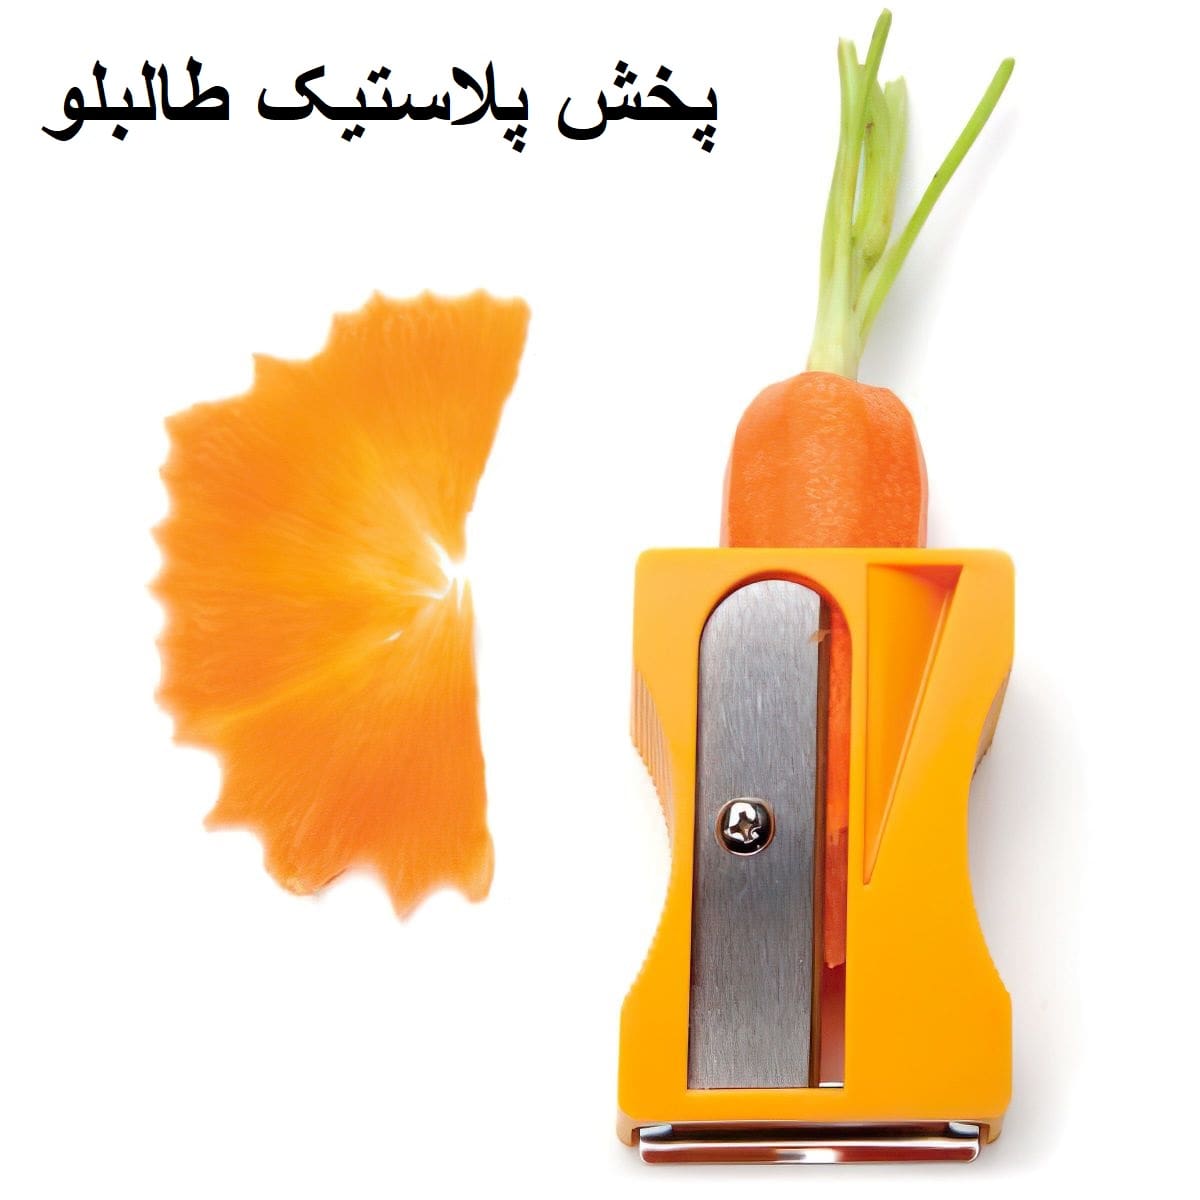 تراش هویج پخش و فروش عمده لوازم کاربردی آشپزخانه